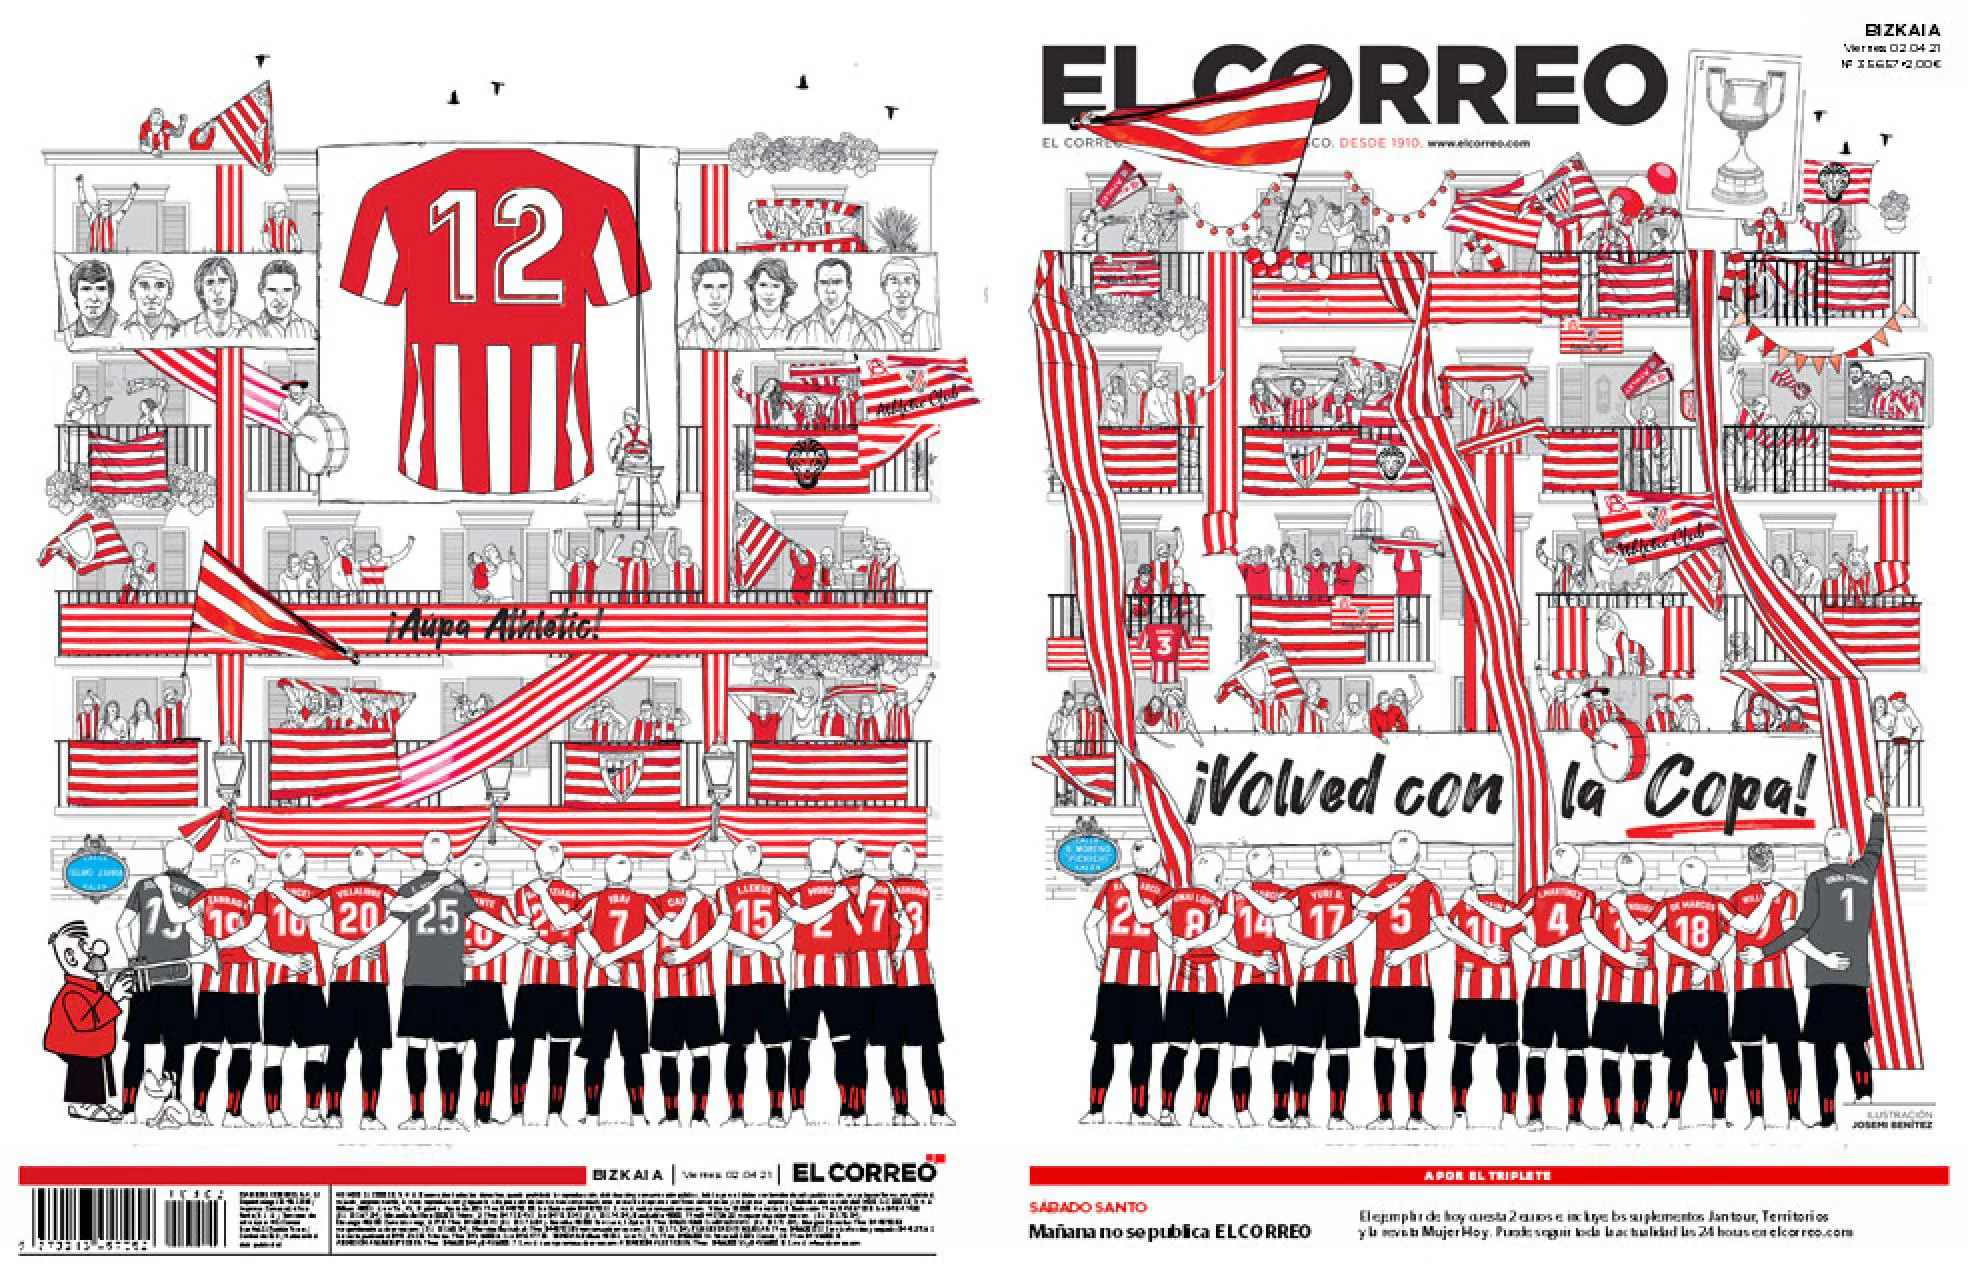 La última portada de EL CORREO antes de la final: «¡Volved con la Copa!»